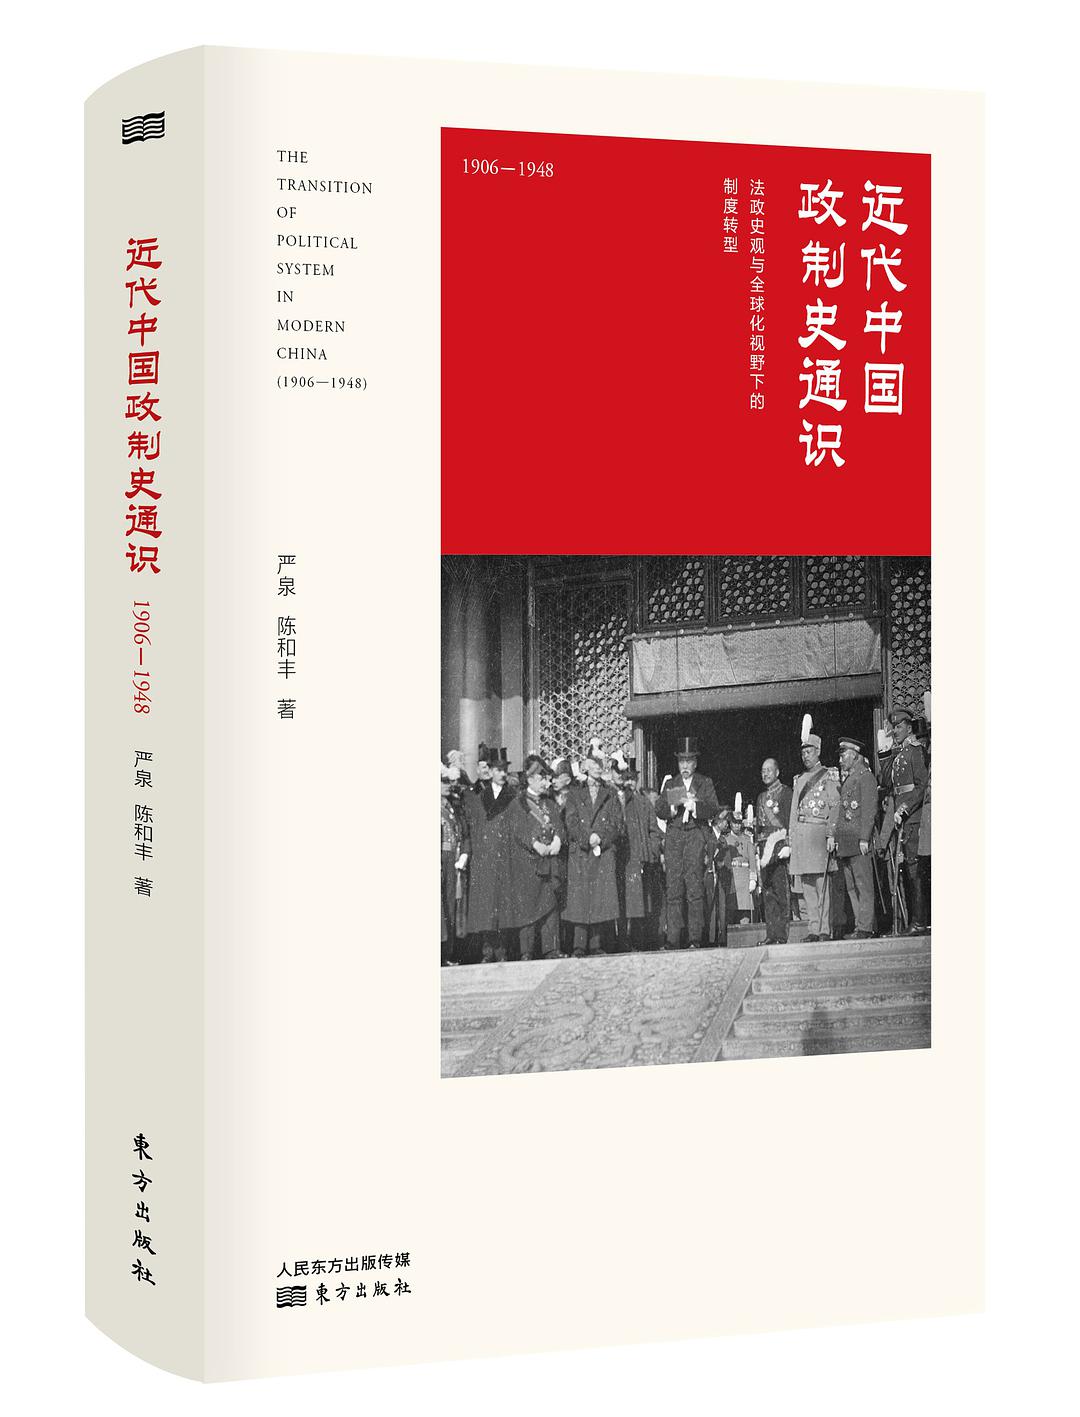 近代中国政制史通识 1906-1948 [法政史观与全球化视野下的制度转型] 1906-1948